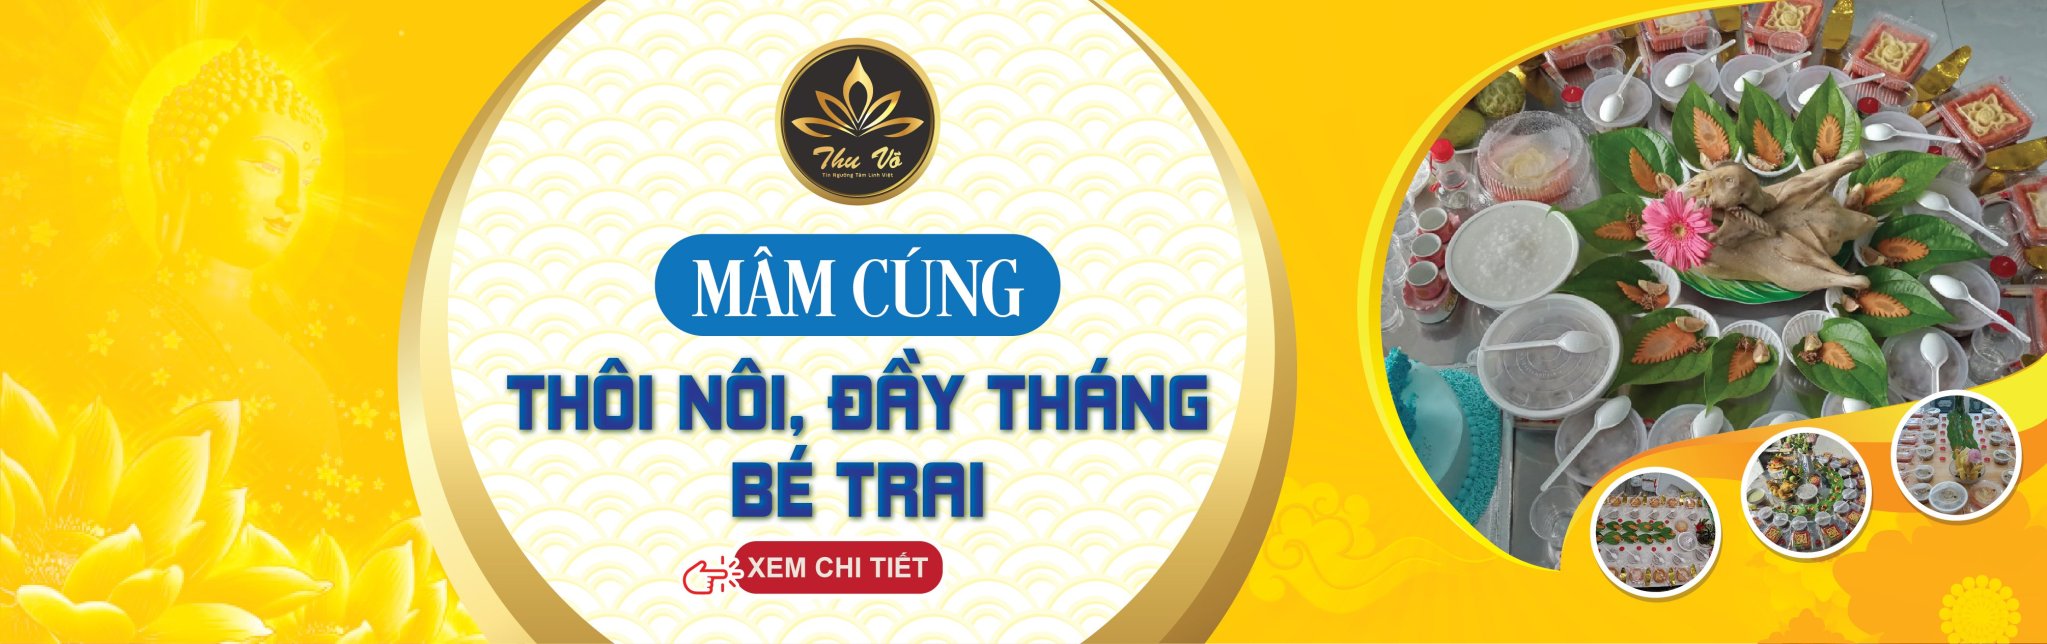 Mam Cung Thoi Noi Be Trai Banner